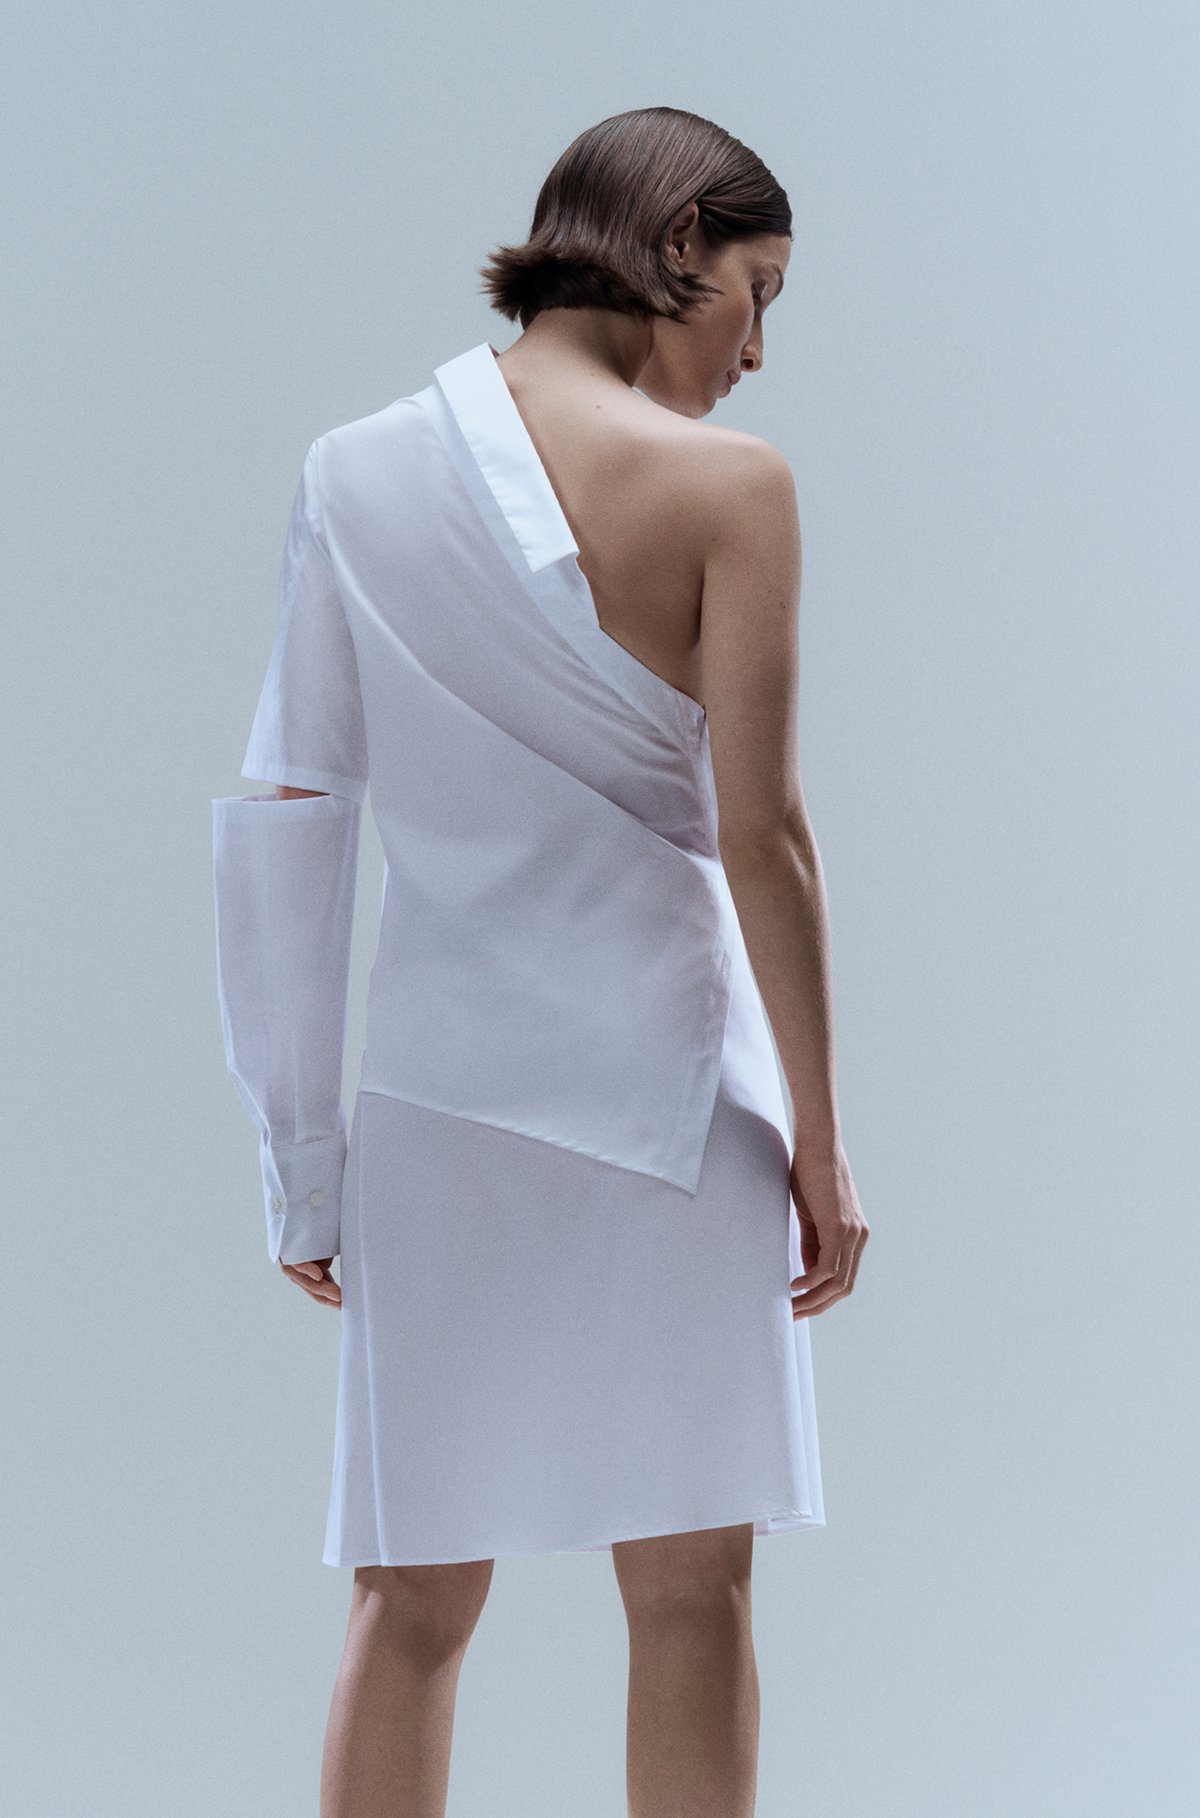 One-shoulder shirt dress in cotton poplin, White